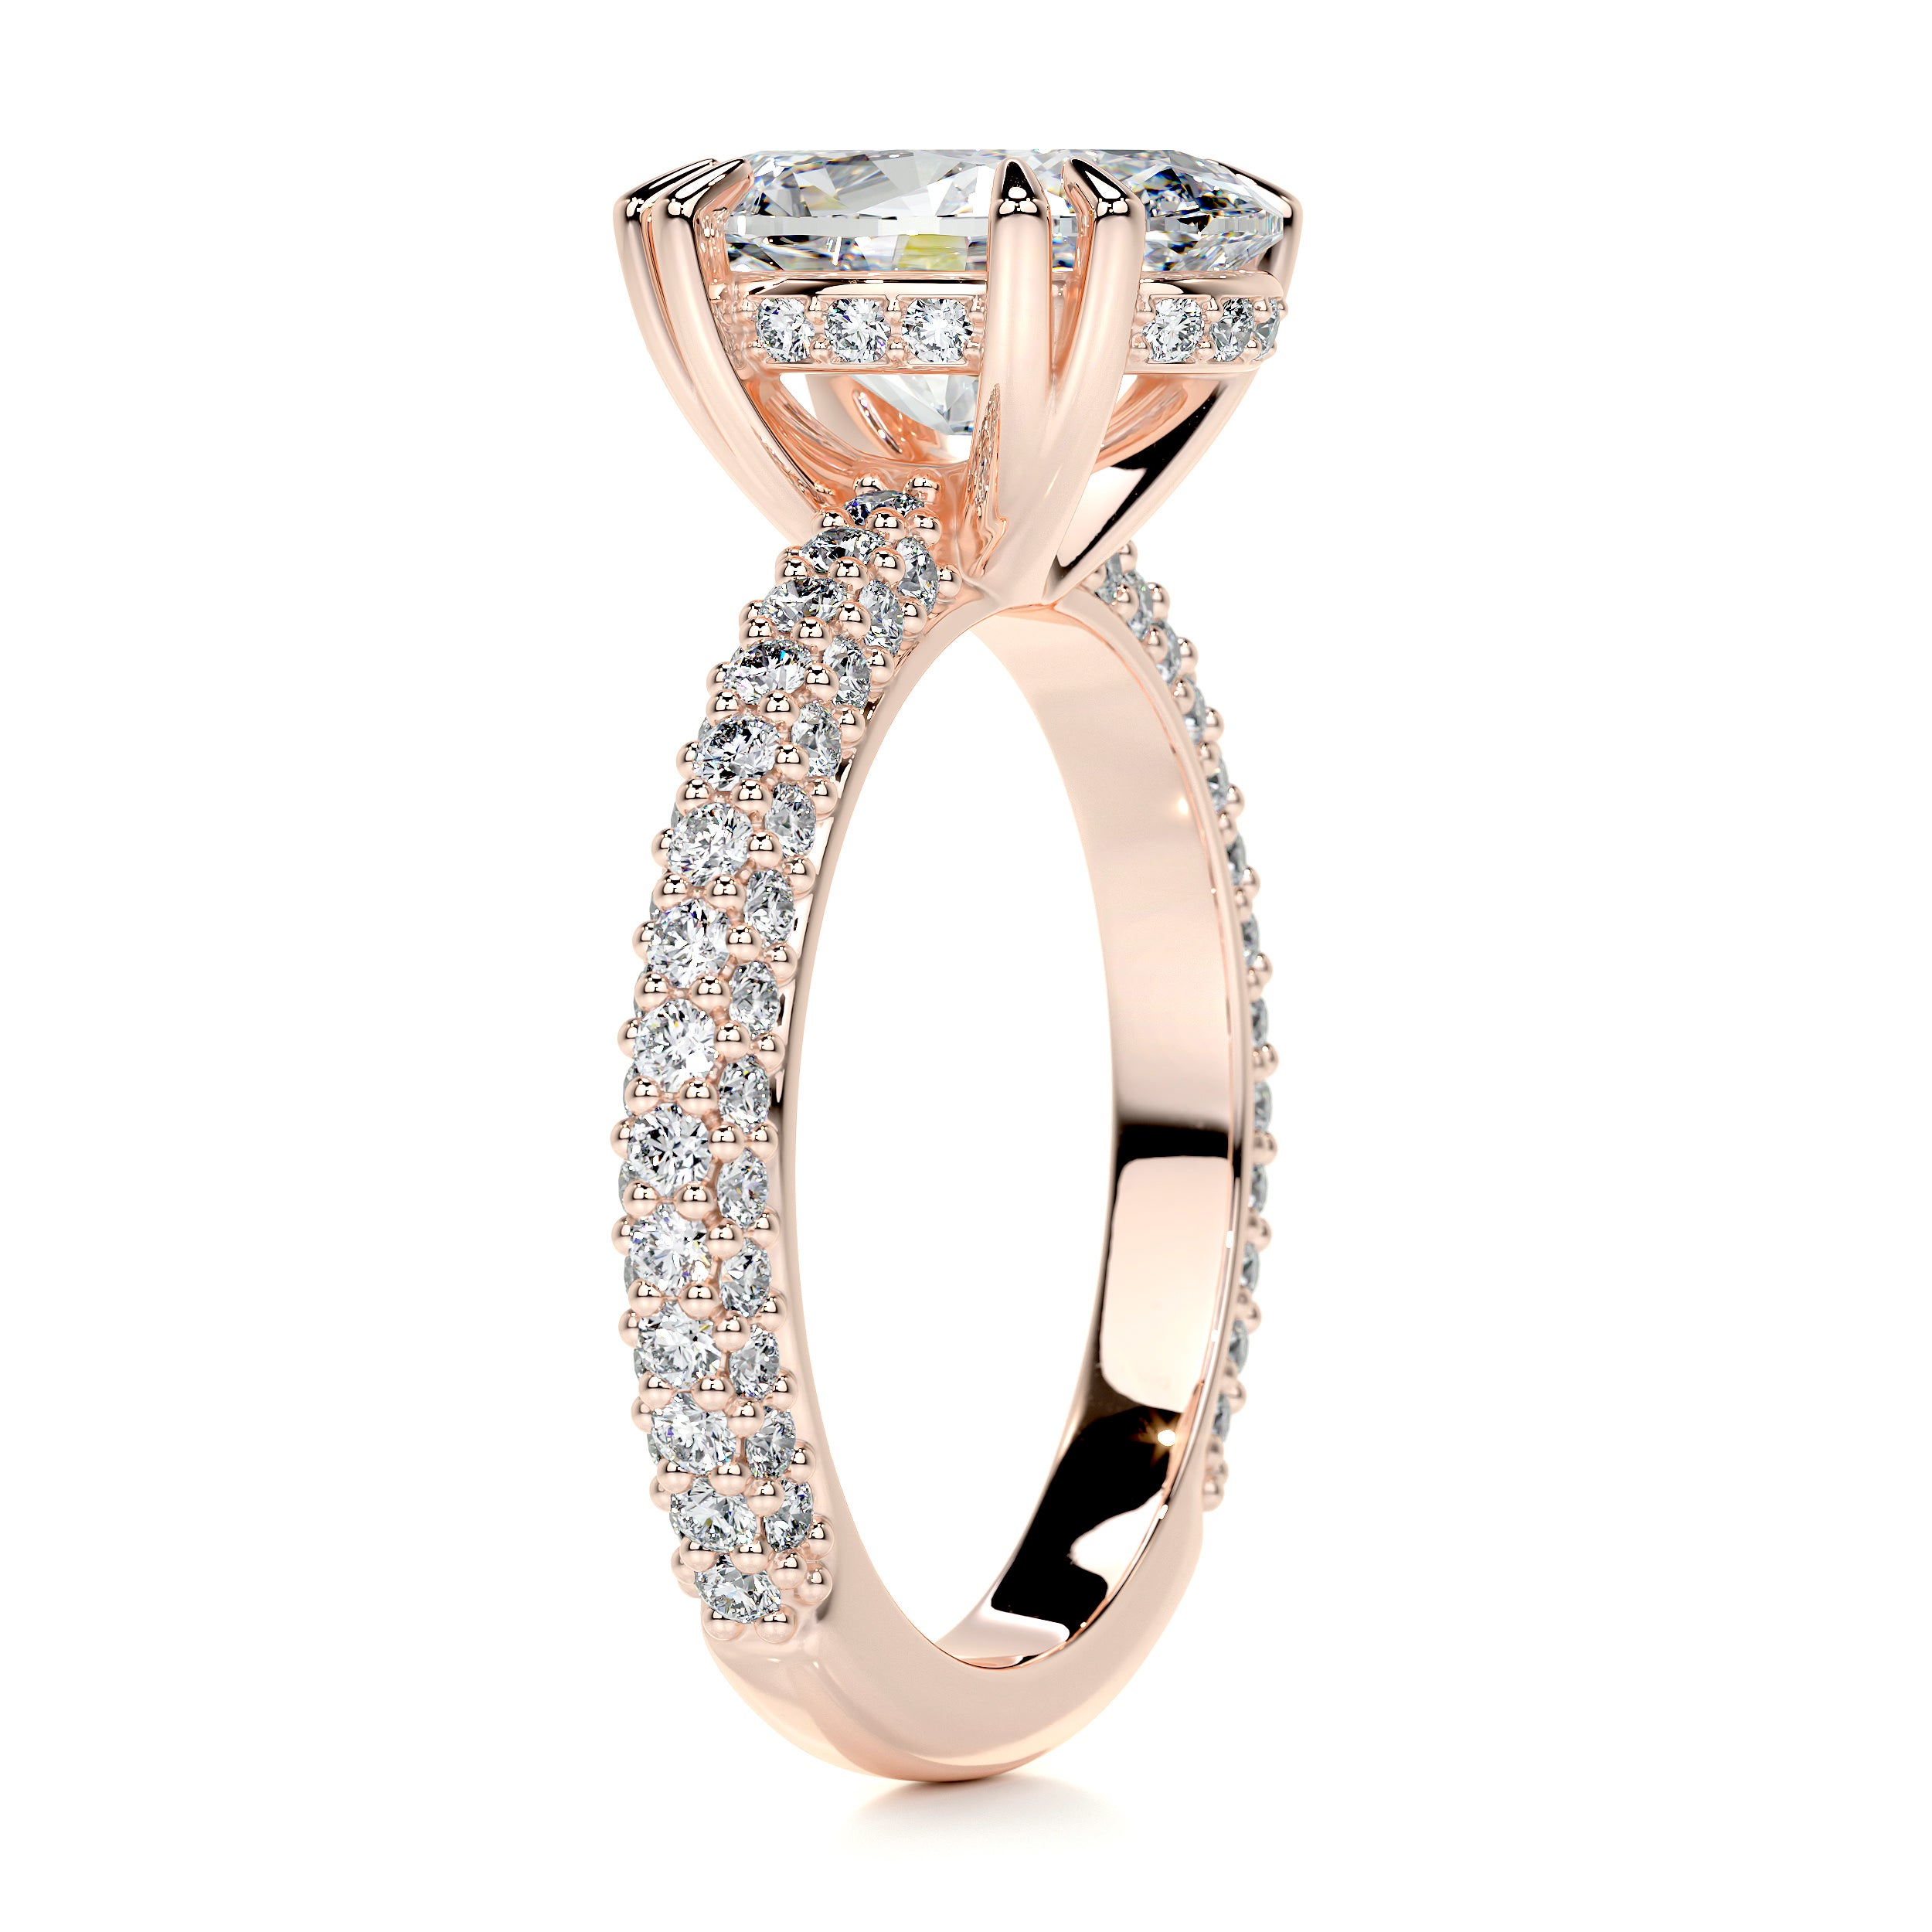 Kelly Diamond Engagement Ring   (3.50 Carat) -14K Rose Gold